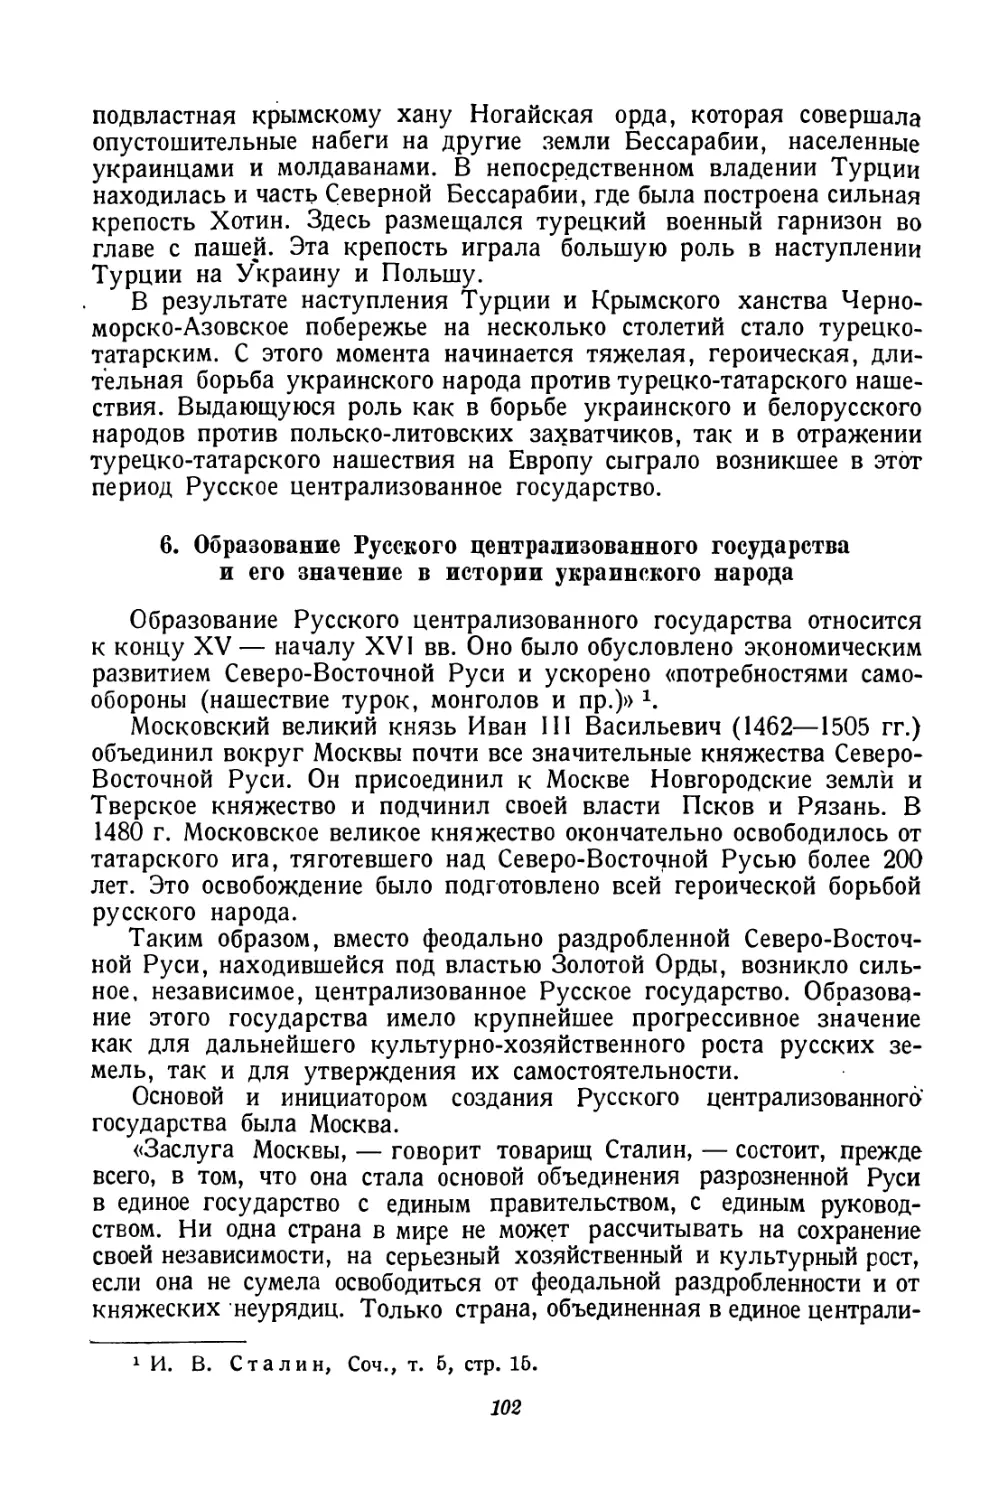 6. Образование Русского централизованного государства и его значение в истории украинского народа